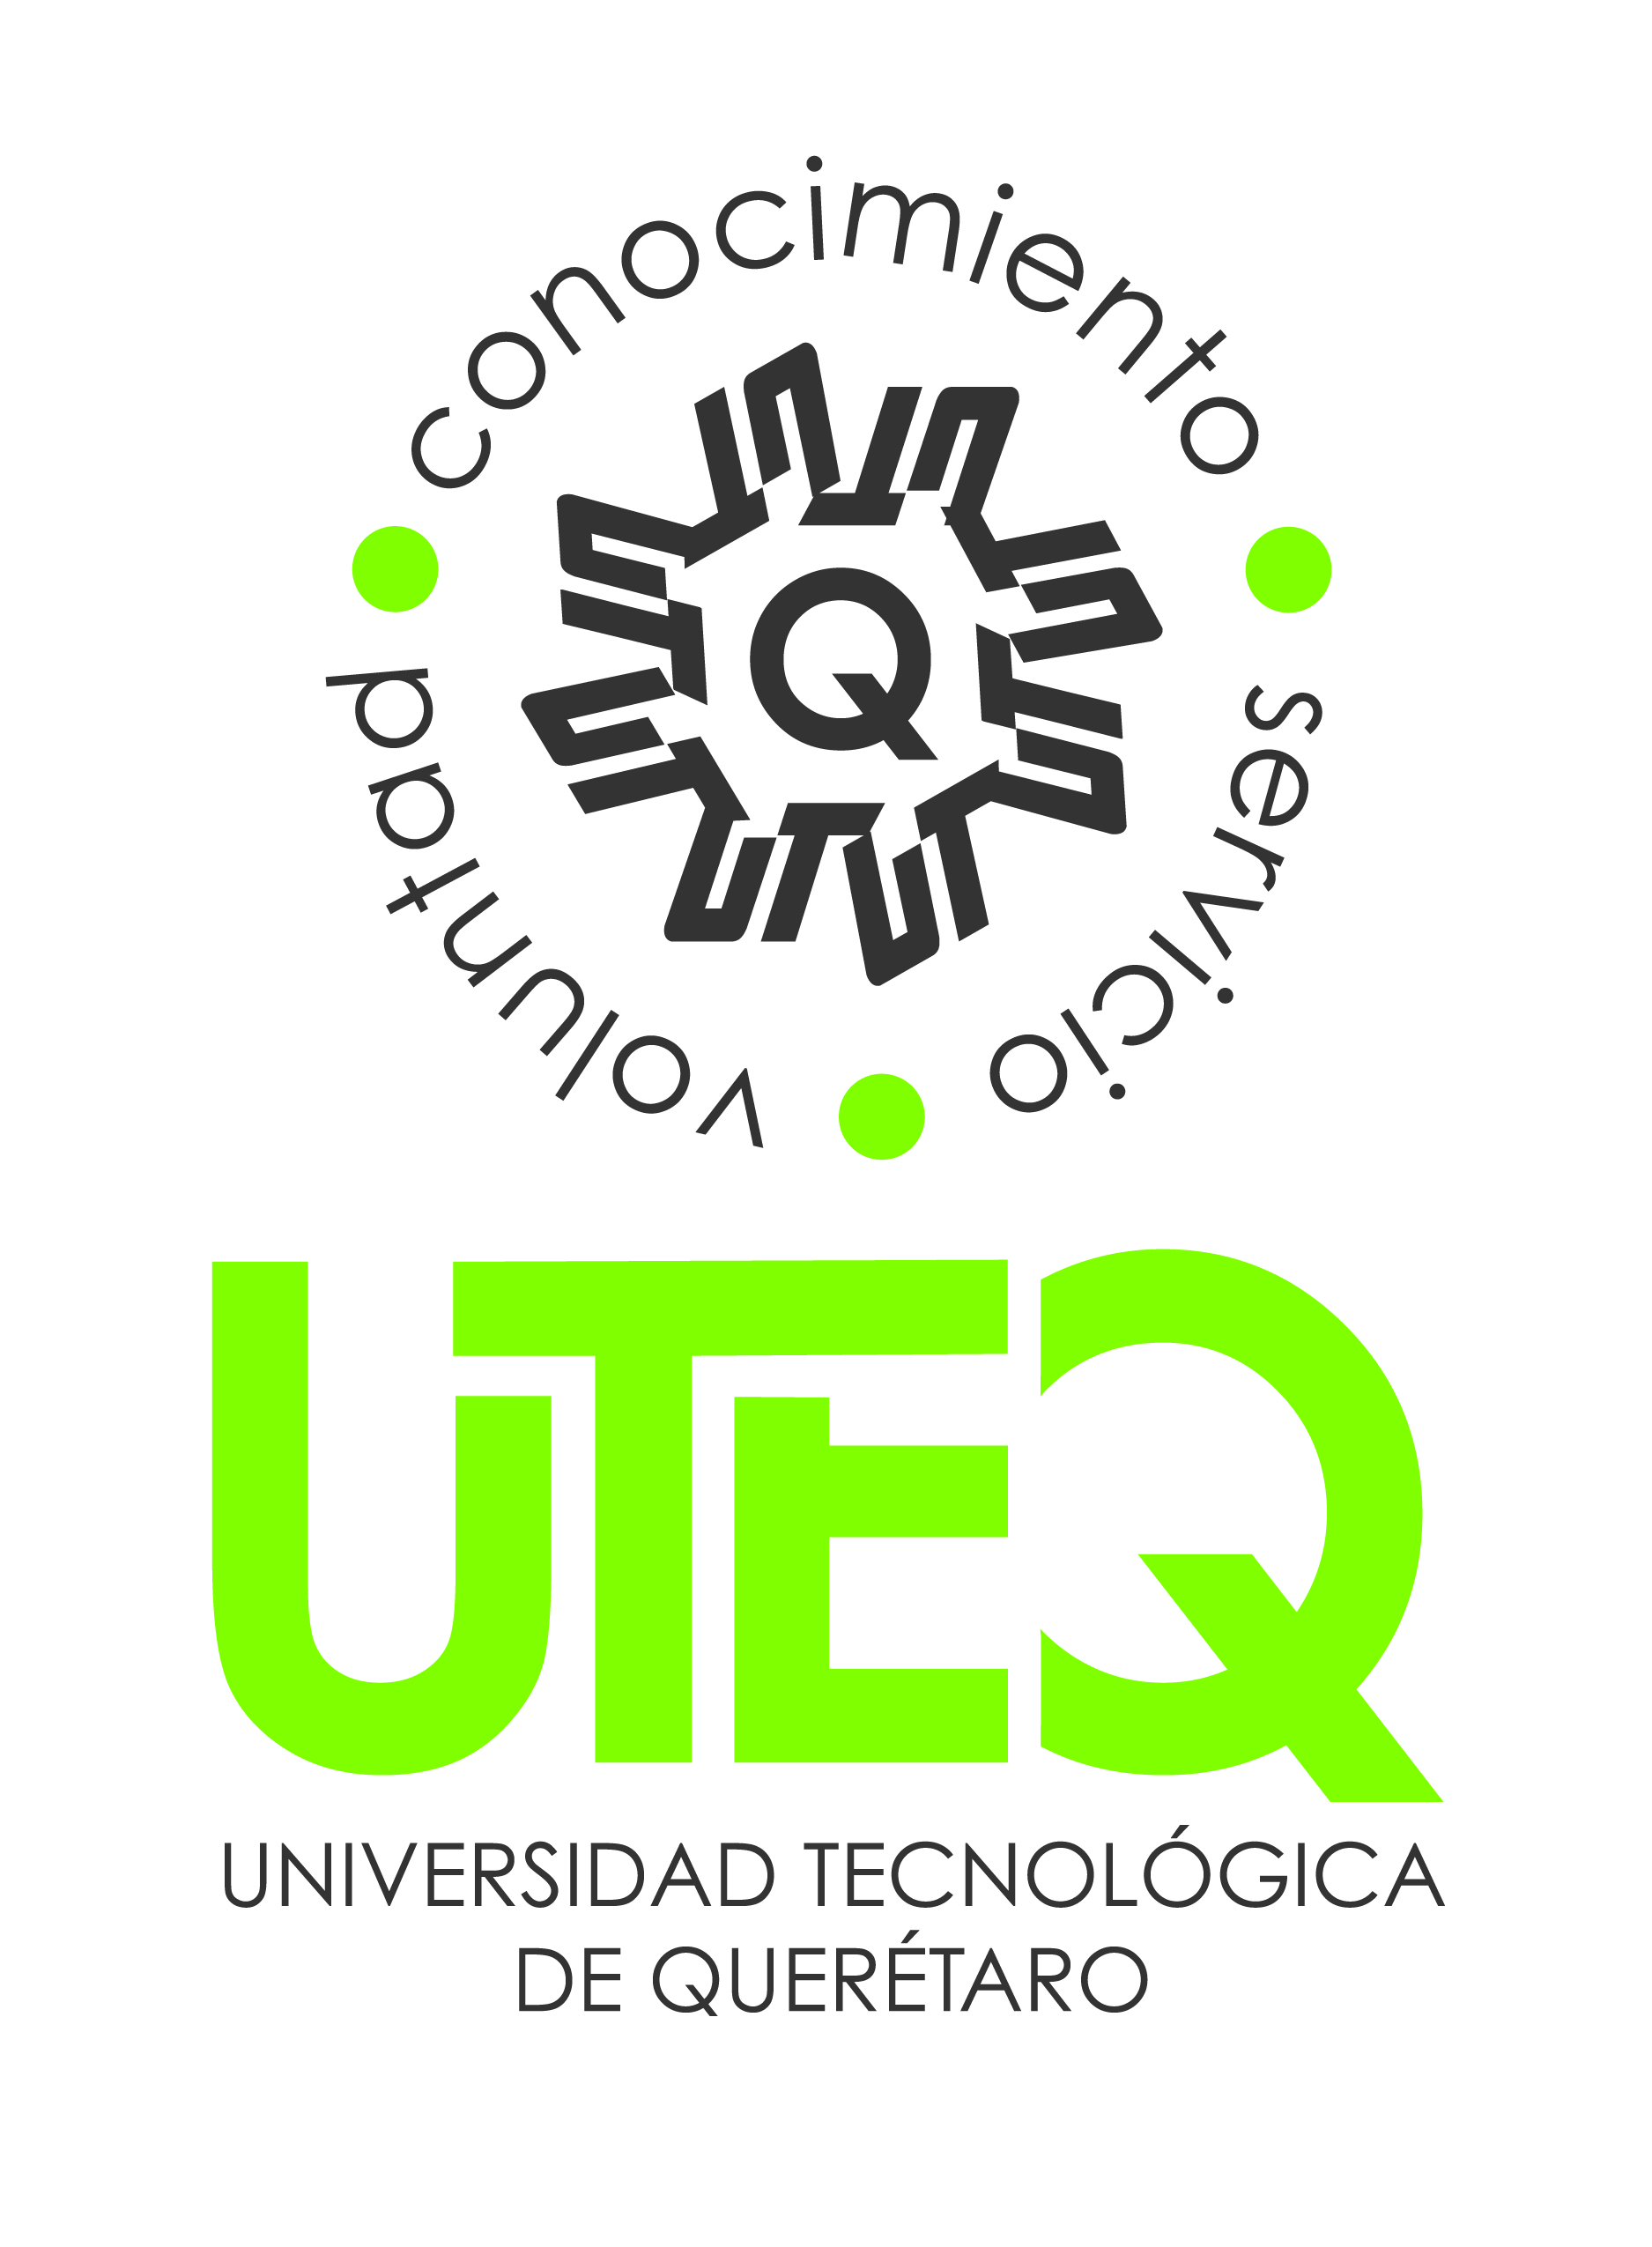 Universidad del Desarrollo Logo photo - 1